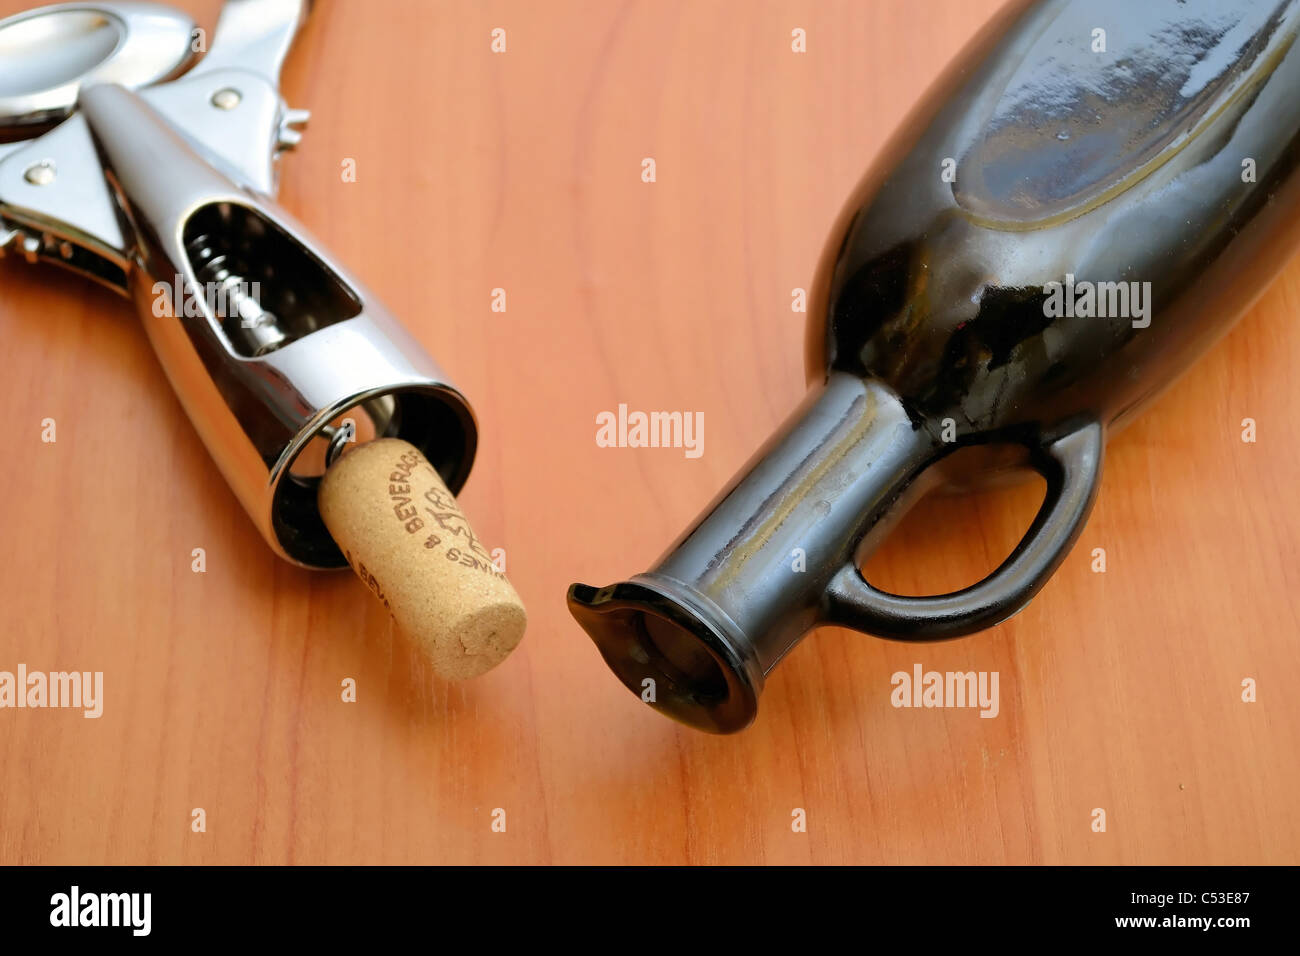 Bottiglia, cavatappi e tappo per bottiglia di vino sul tavolo Foto Stock